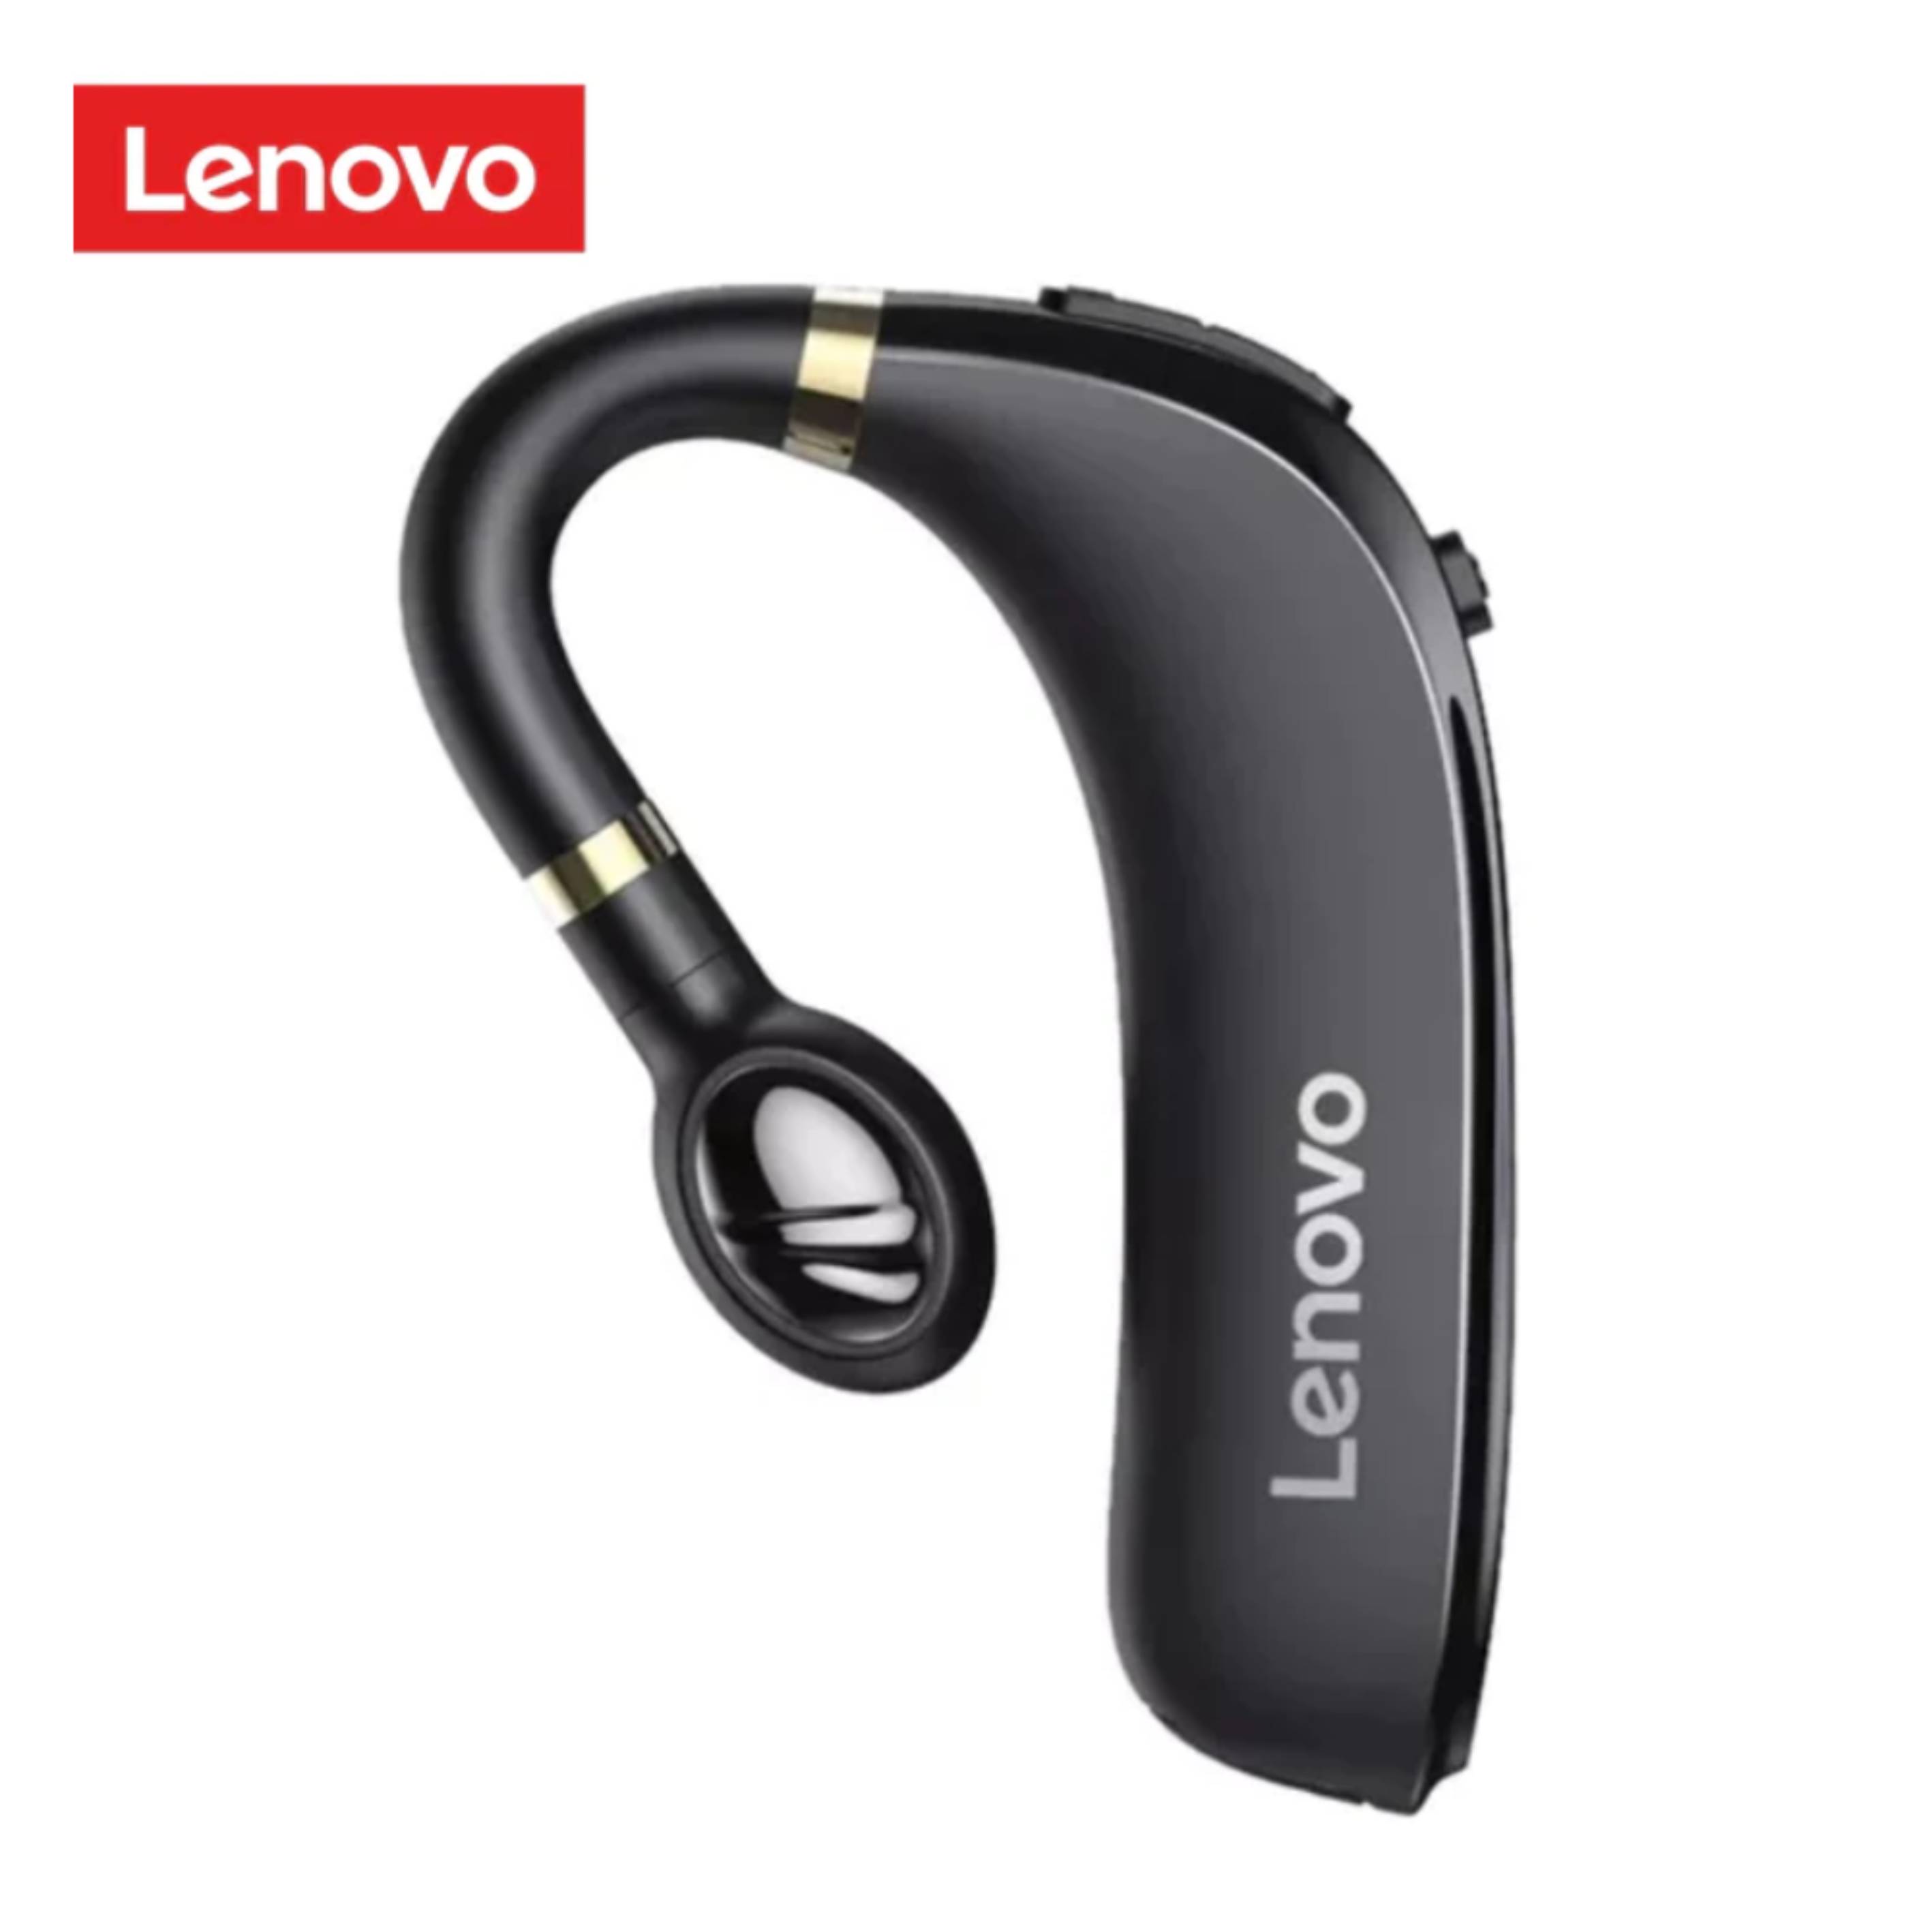 Audífono Bluetooth Lenovo Hx106 Headset - Negro